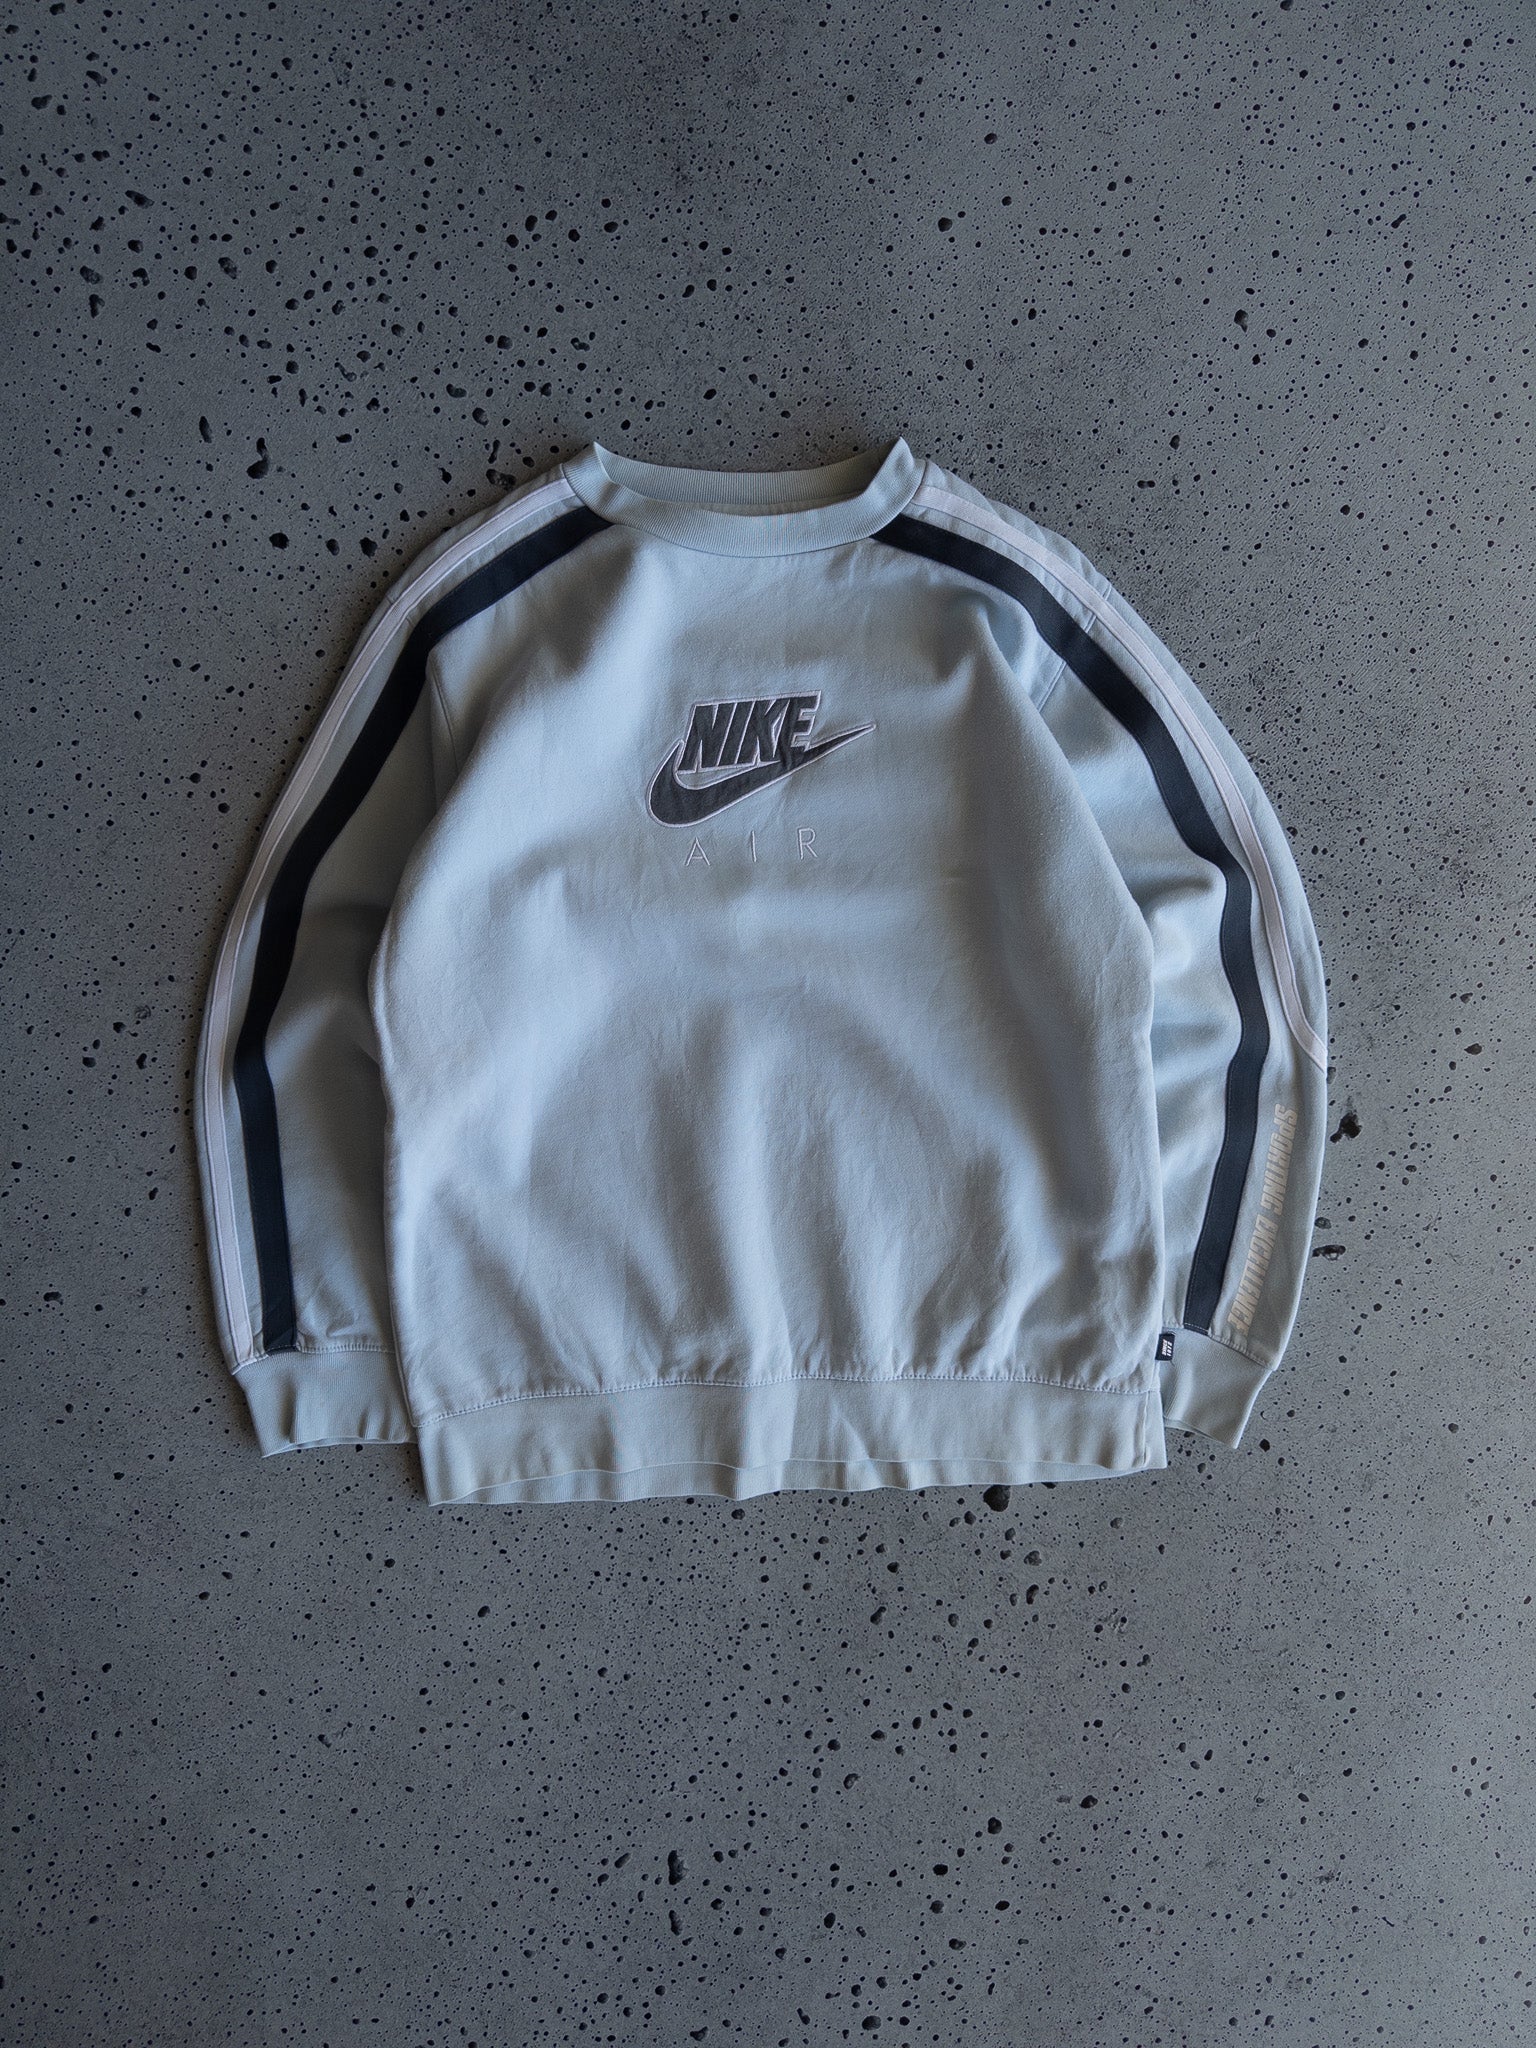 Vintage Nike Air Sweatshirt (XS)